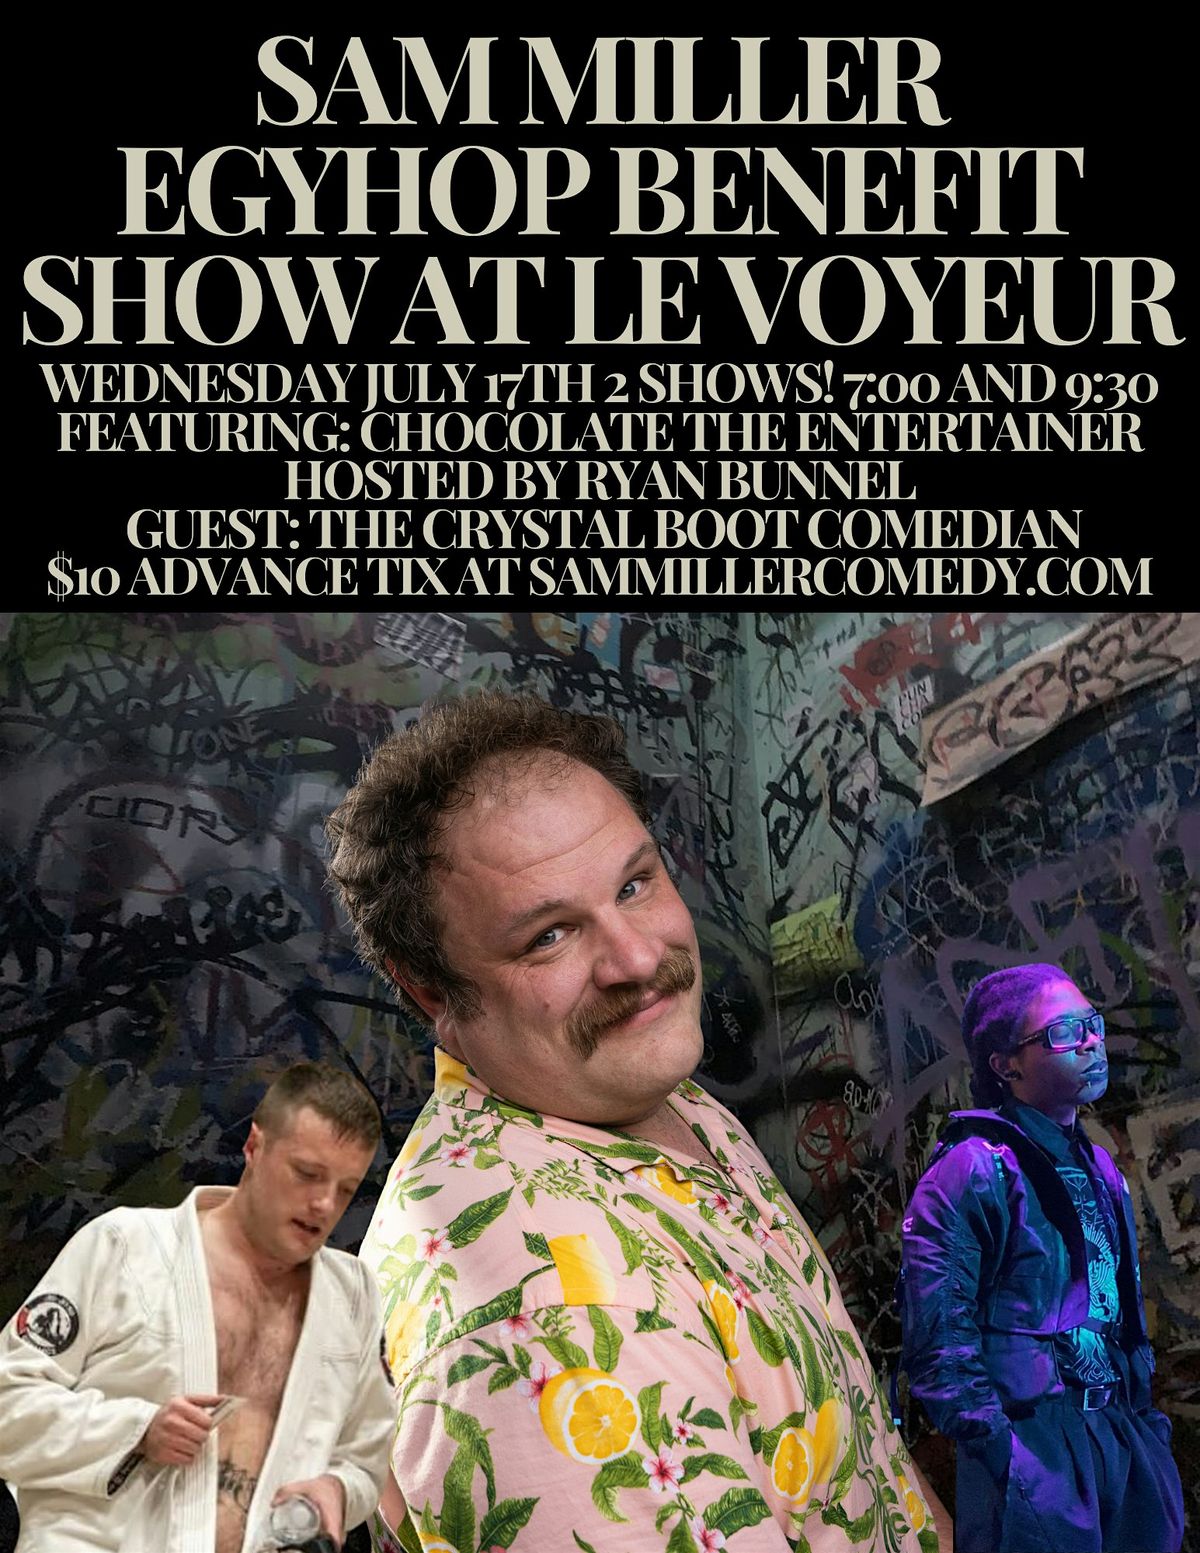 Sam Miller EGYHOP benefit show at Le Voyeur